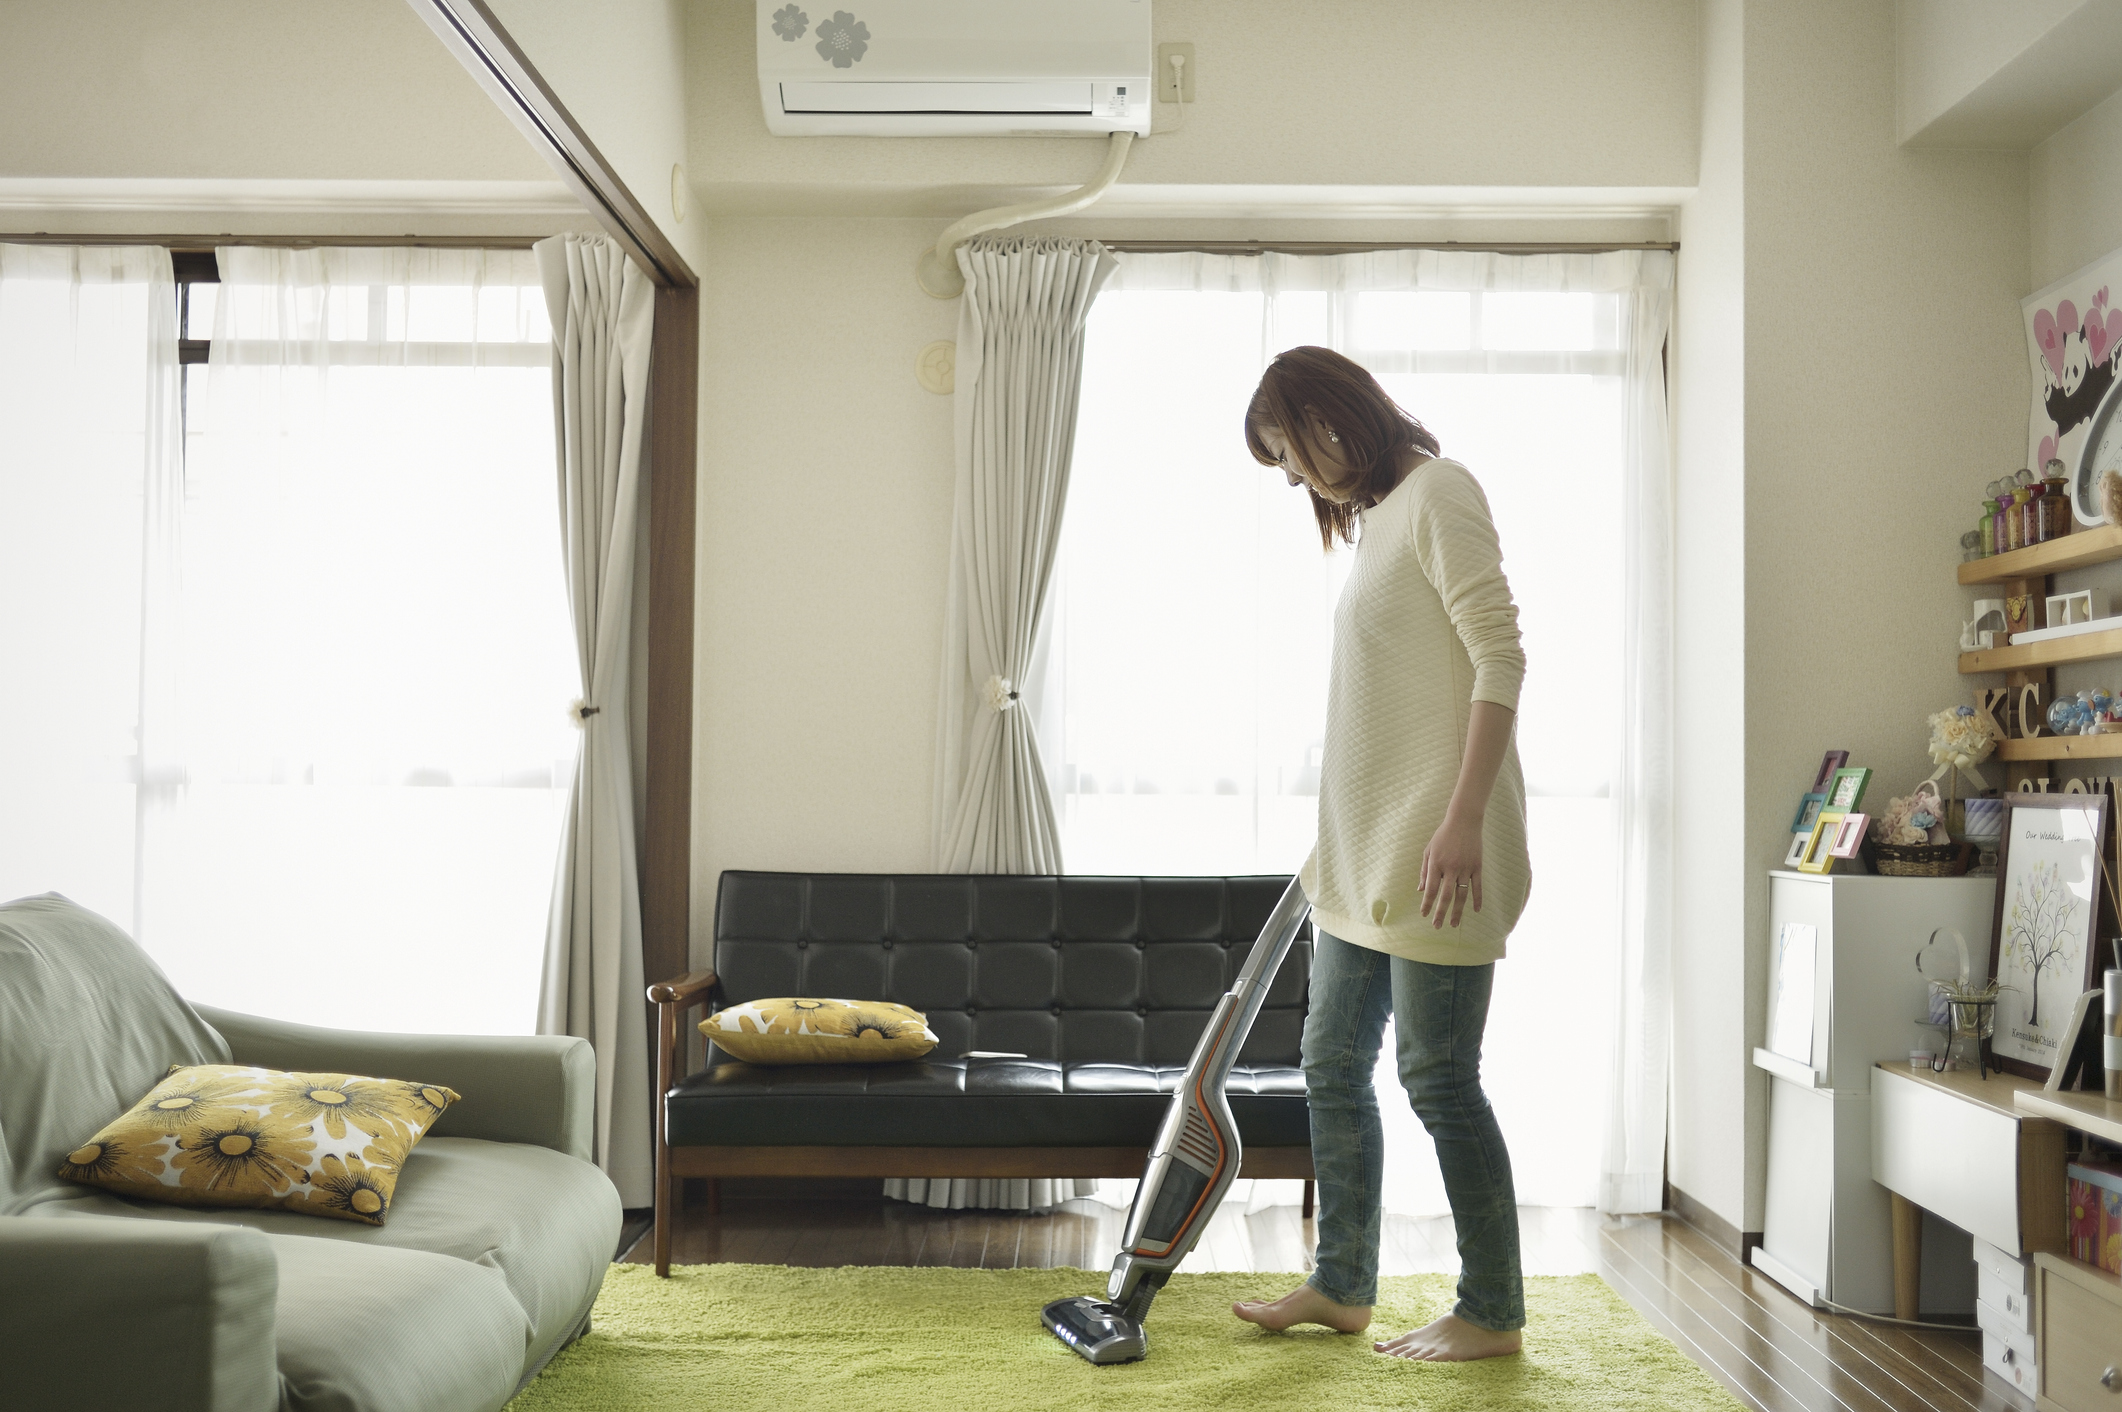 Frauen in Japan leisten über eine halbe Billion Dollar mehr unbezahlte Hausarbeit als Männer